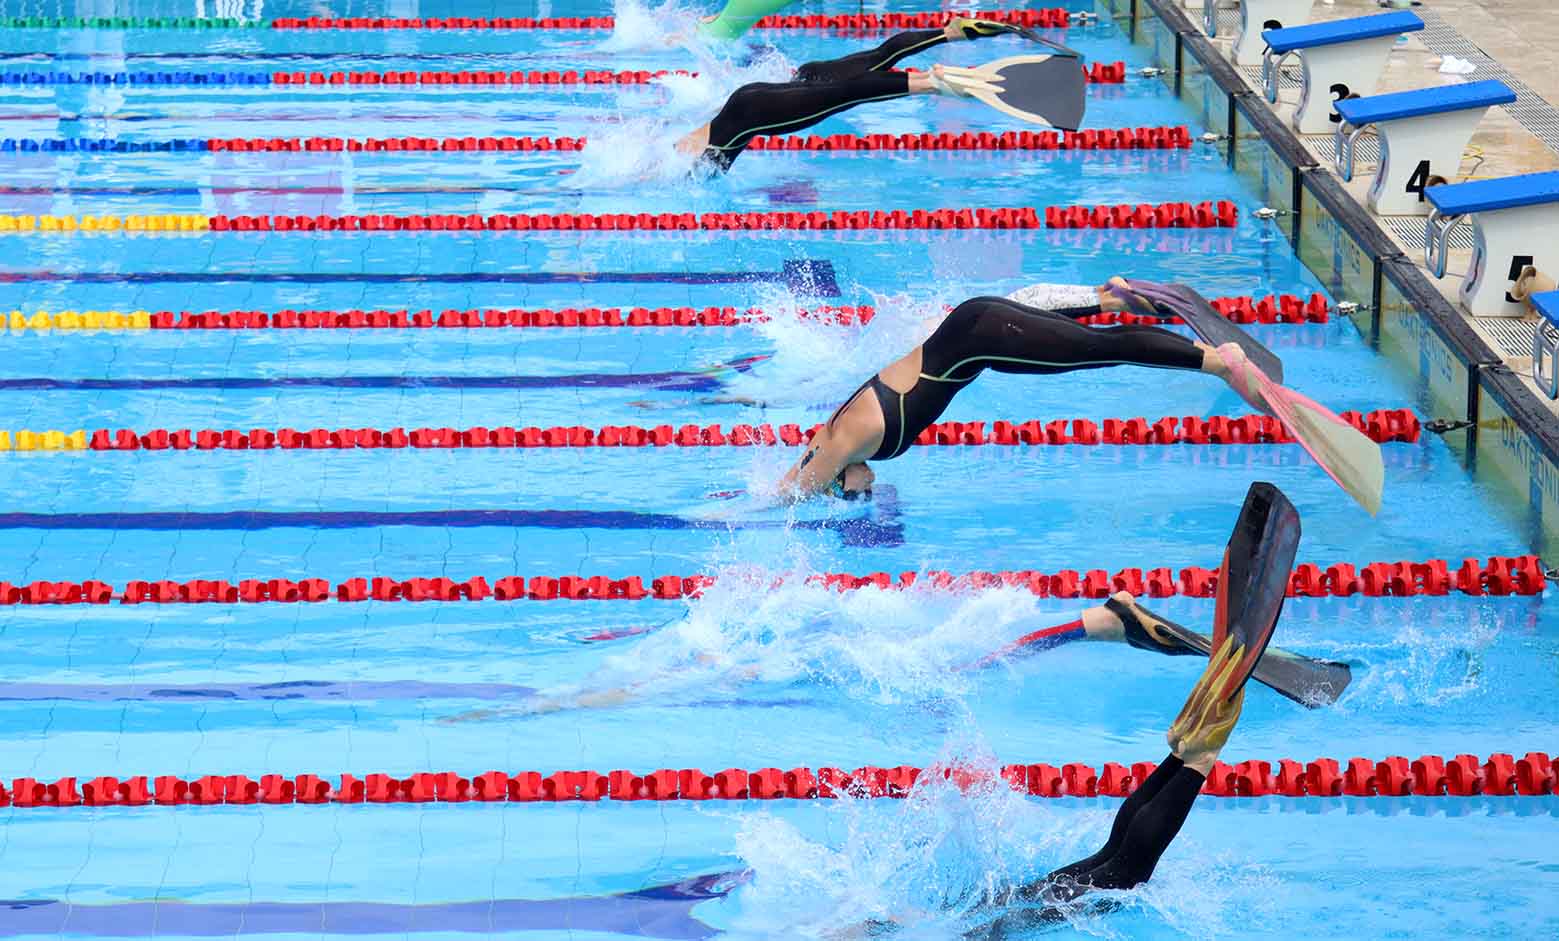 Mistrzostwa Świata w pływaniu w płetwach rozpoczęły się w Cali